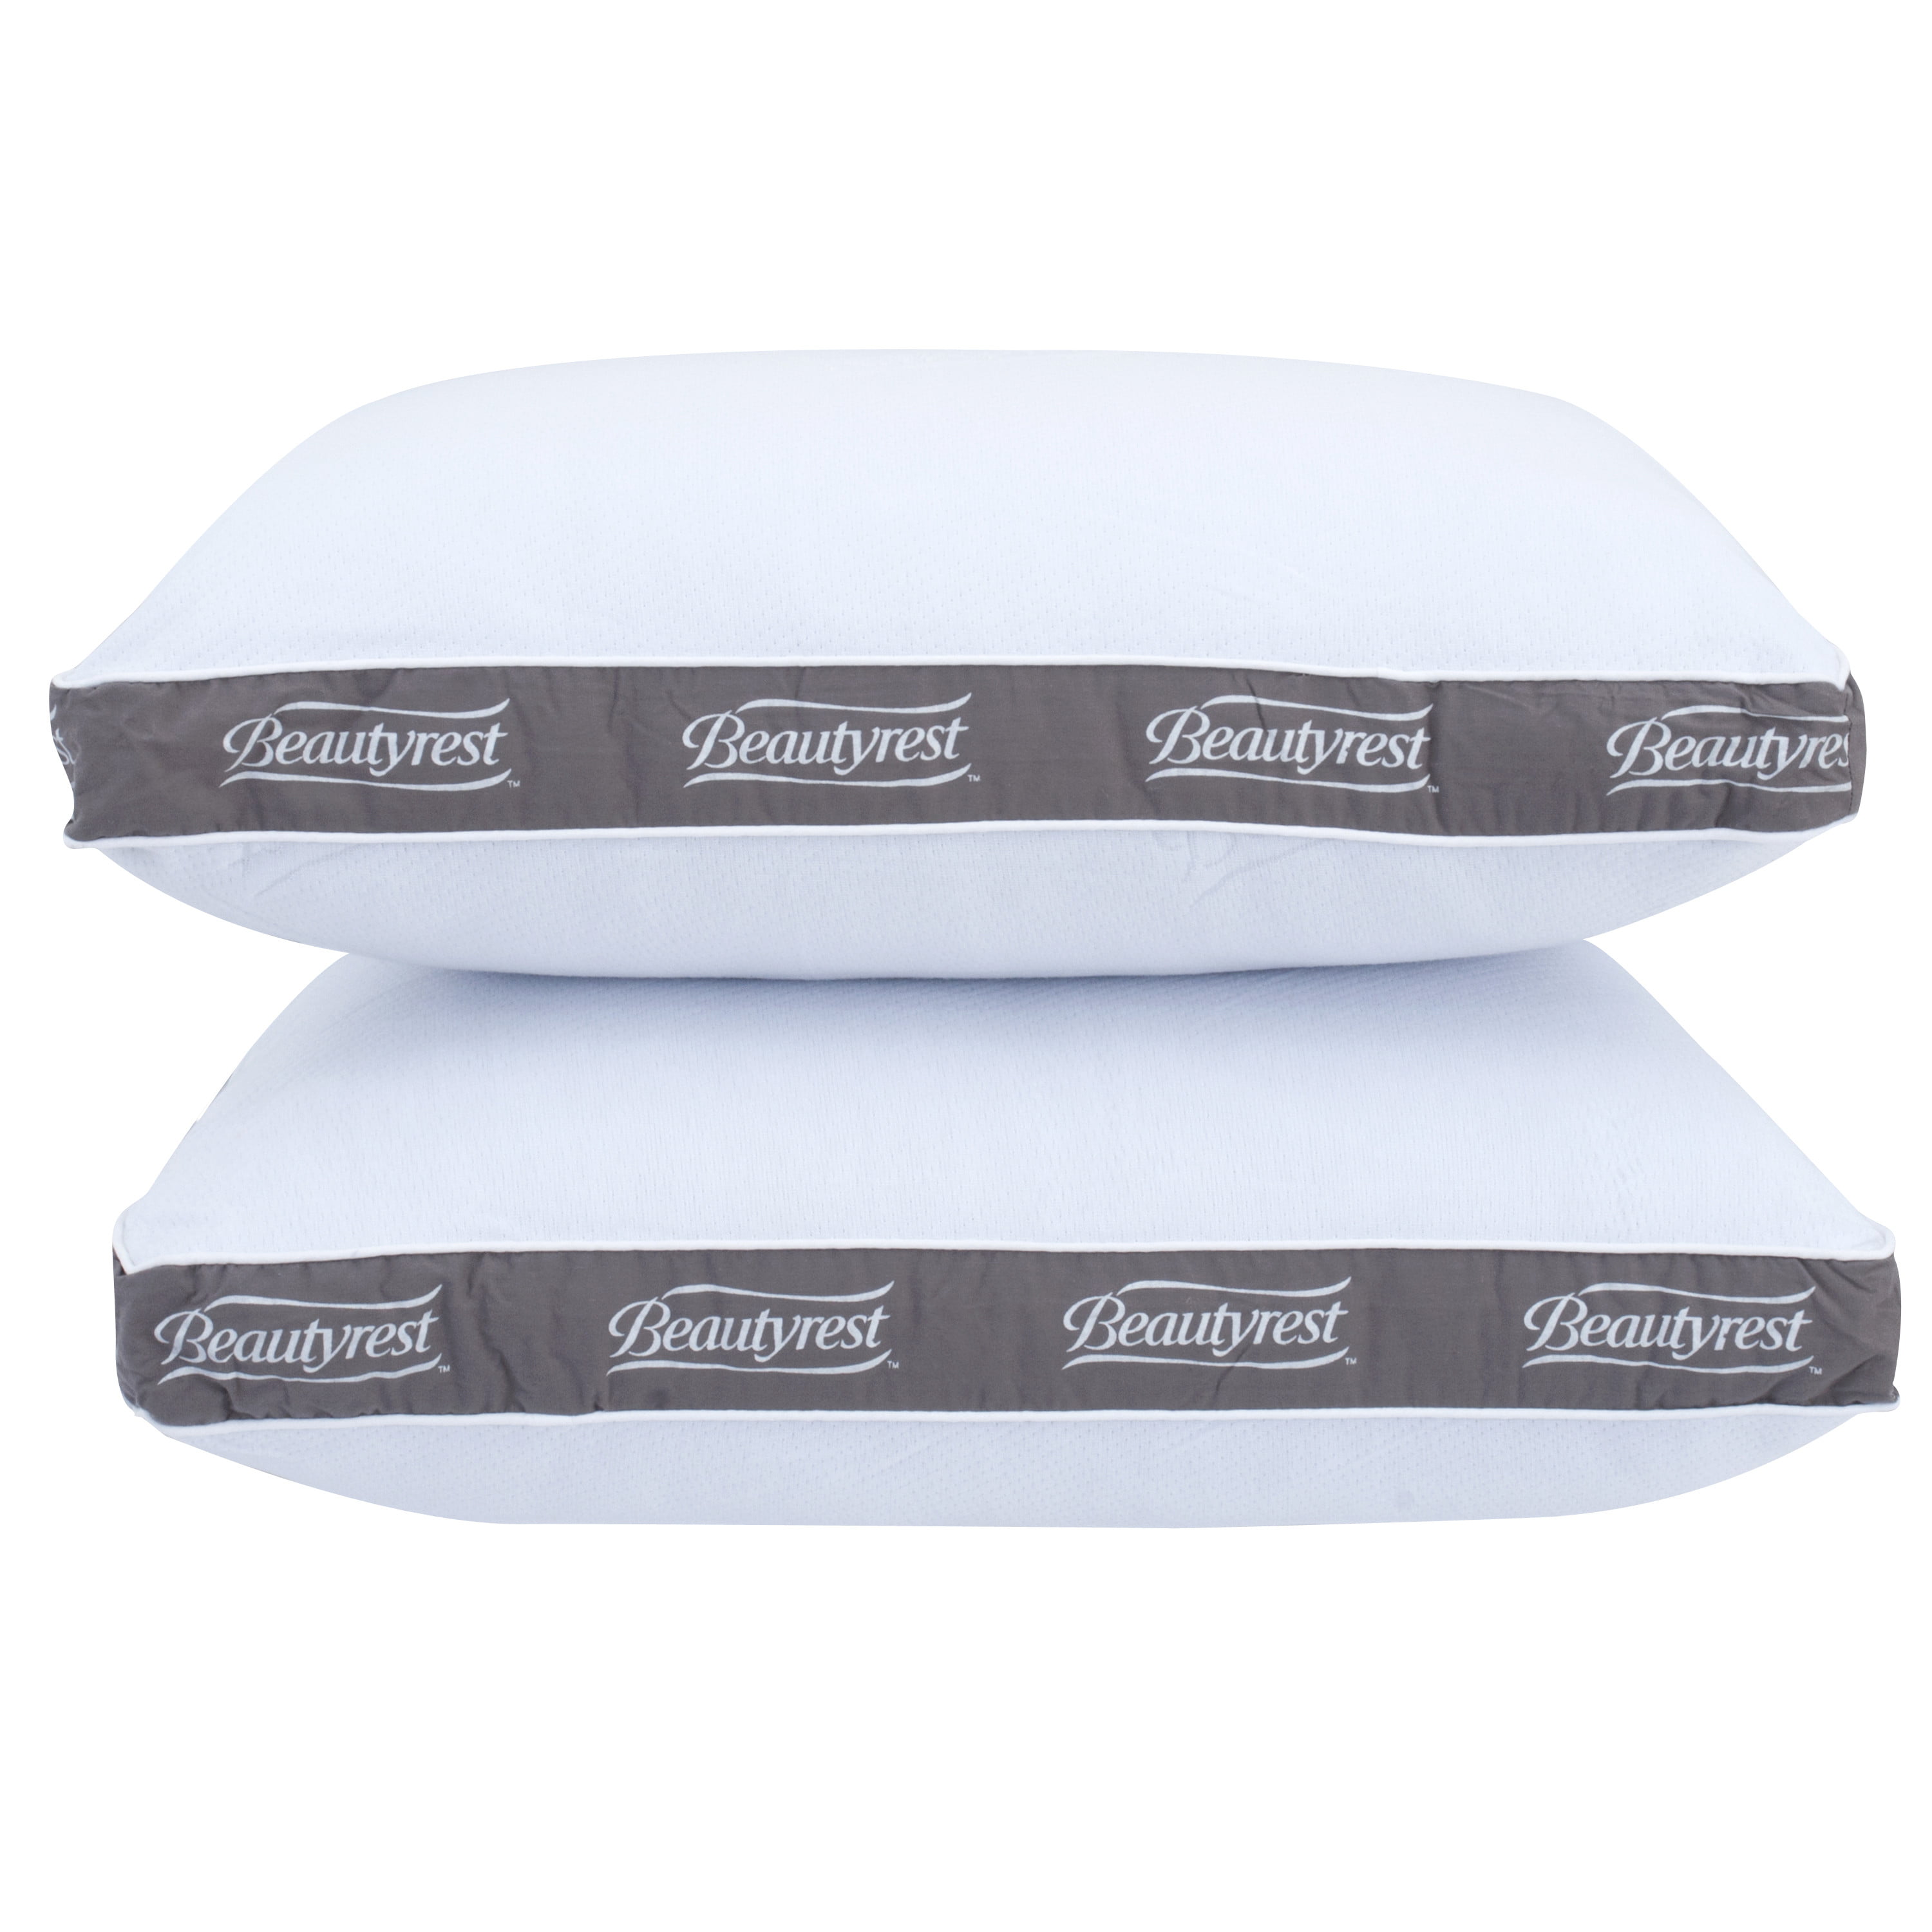 two beautyrest pillows.